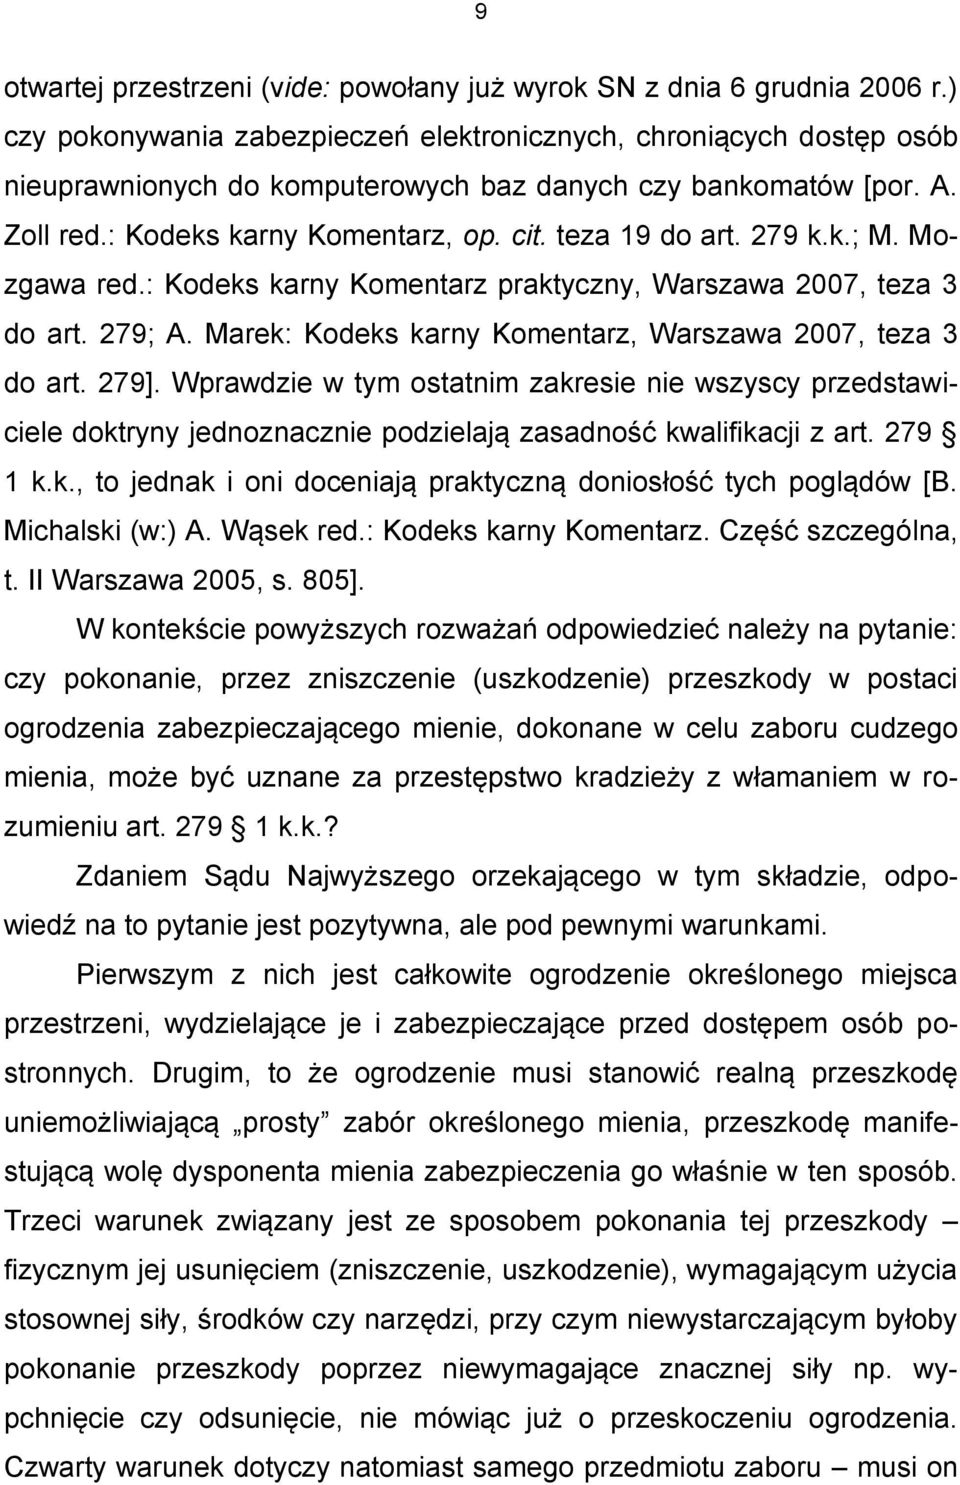 279 k.k.; M. Mozgawa red.: Kodeks karny Komentarz praktyczny, Warszawa 2007, teza 3 do art. 279; A. Marek: Kodeks karny Komentarz, Warszawa 2007, teza 3 do art. 279].